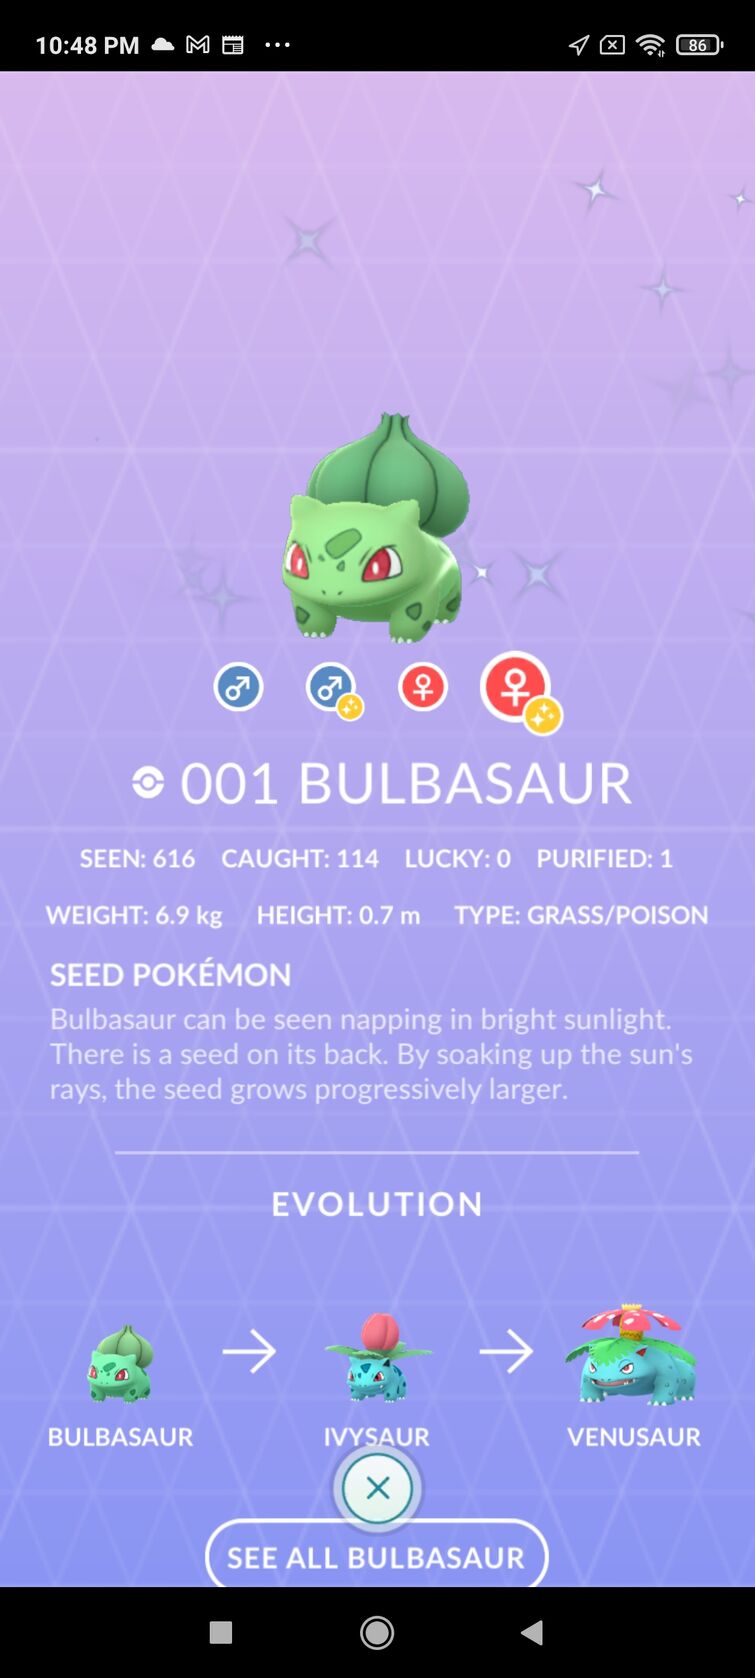 Shiny Bulbasaur via Pokemon Go Community Day!